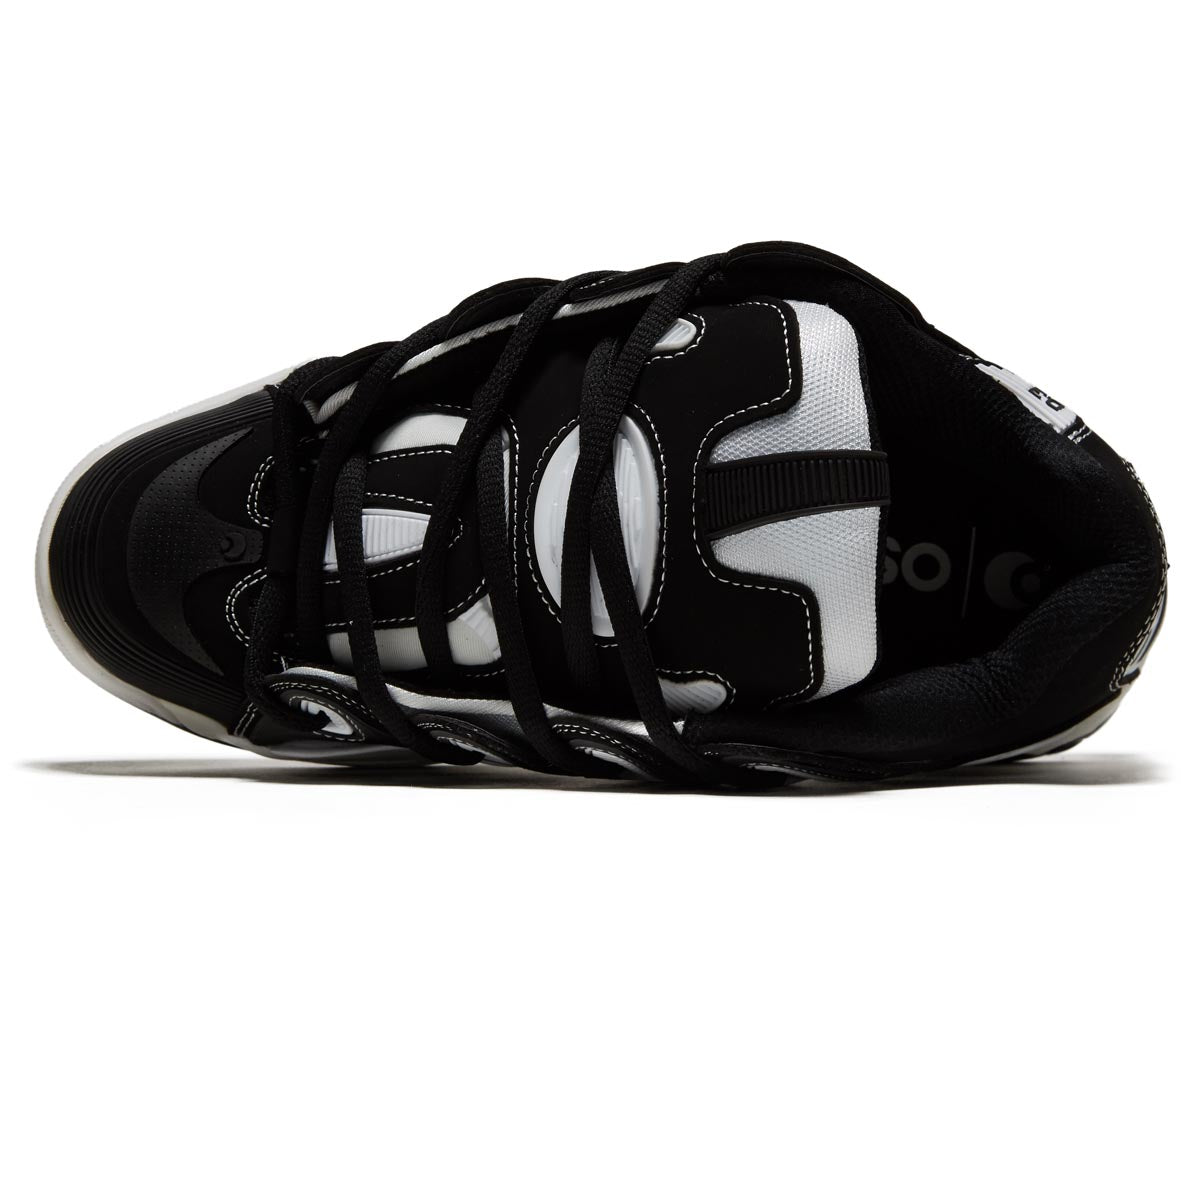 Osiris D3 2001 Shoes - Black/Black/White image 3